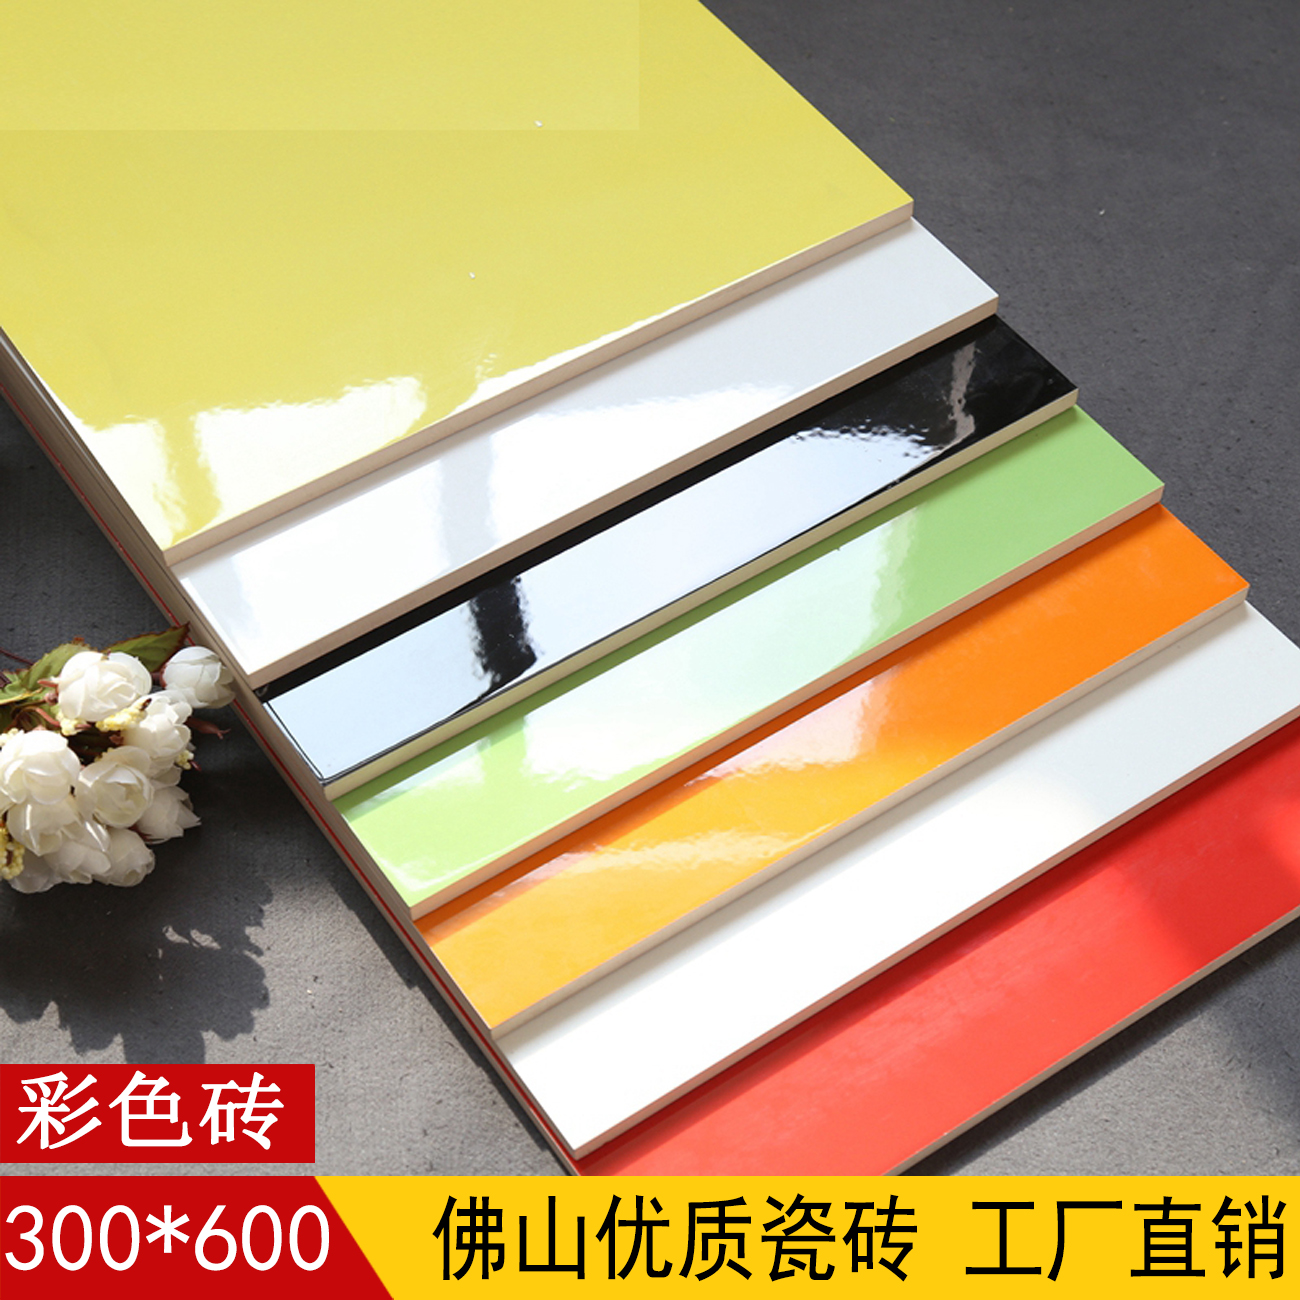 佛山纯色釉面瓷片大红色桔黄色青色黑白卫生间瓷砖300 600厨房墙